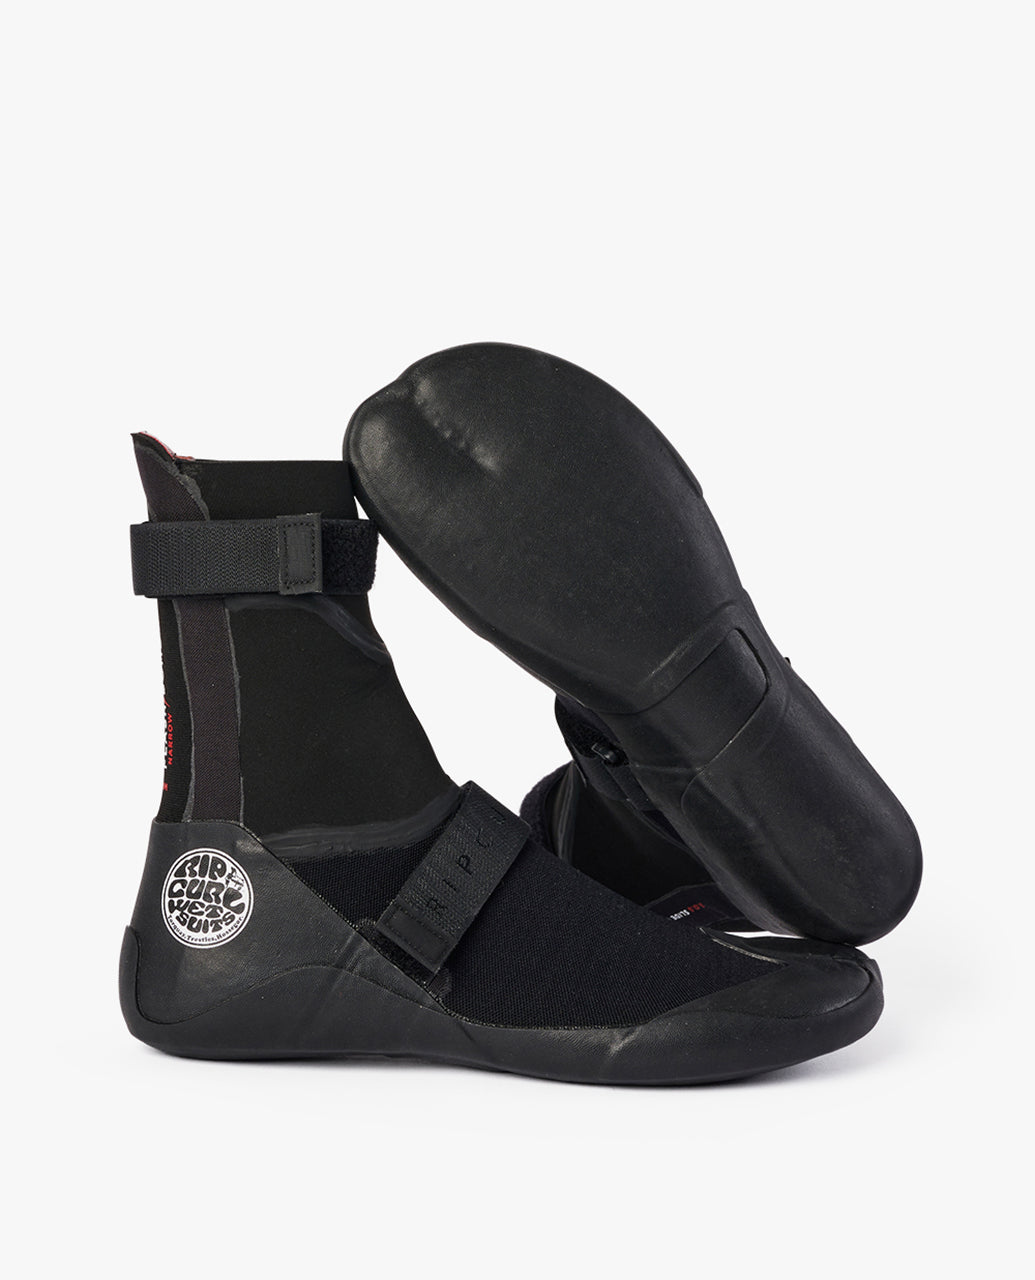 Buty neoprenowe Rip Curl Flashbomb 7 mm z okrągłymi noskami